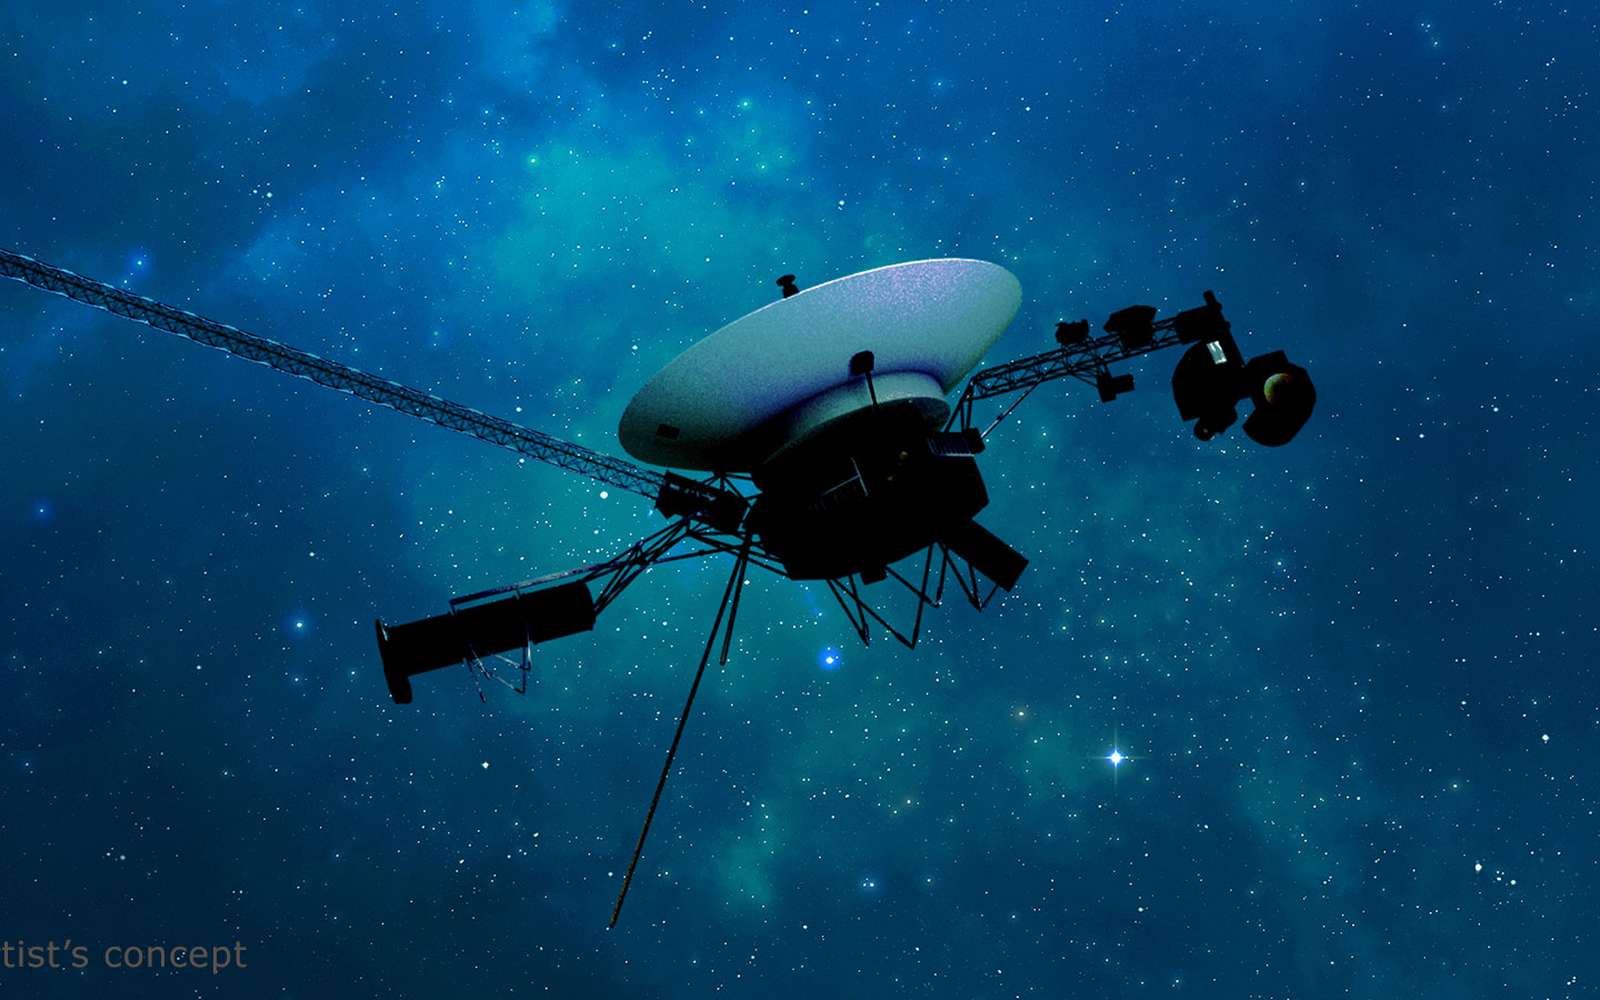 Les mythiques sondes Voyager reçoivent une mise à jour cruciale pour leur périple interstellaire